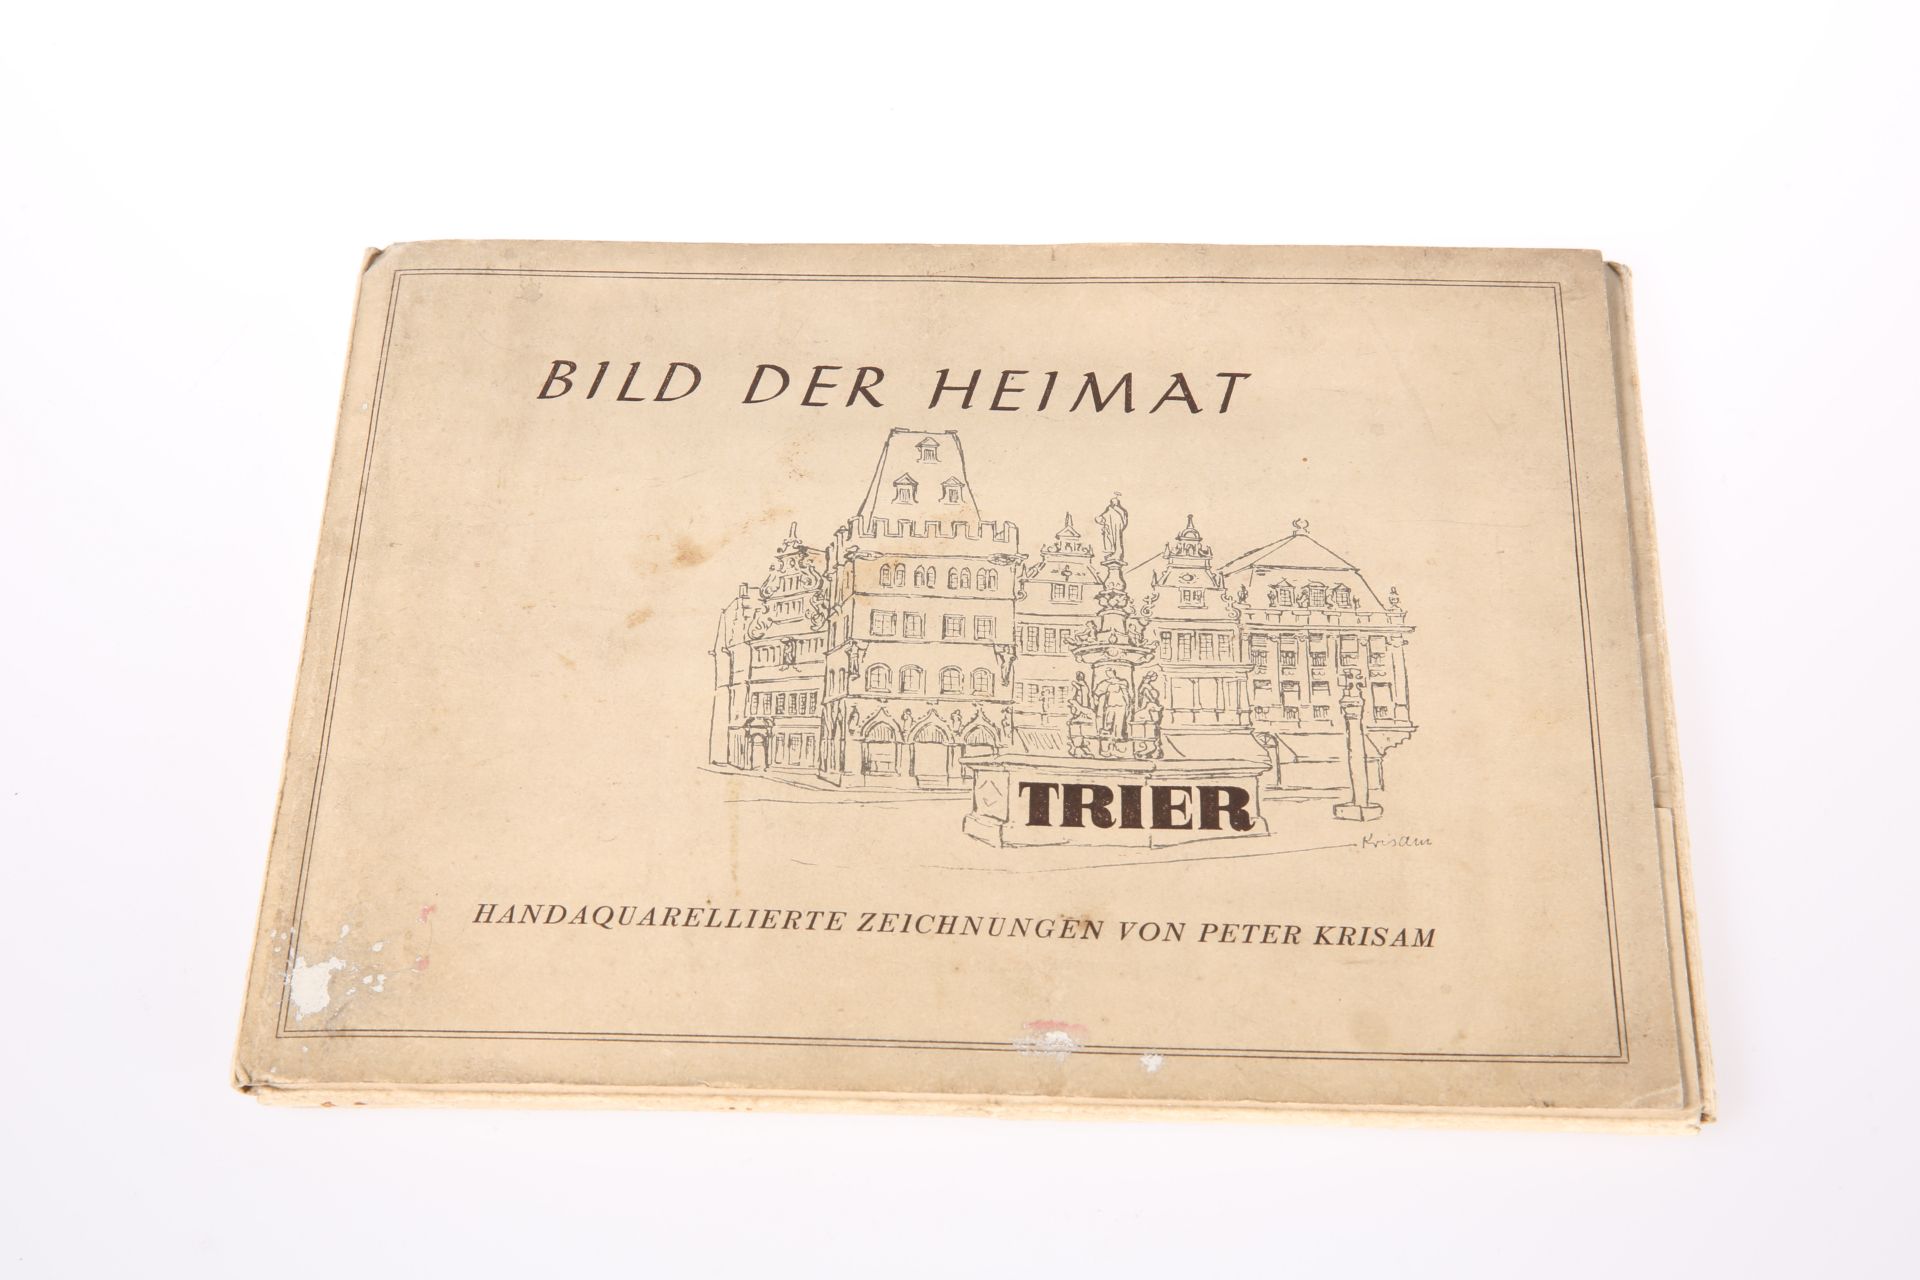 KRISAM (PETER), BILD DER HEIMAT, TRIER, 1941, portfolio with 12 drawings.